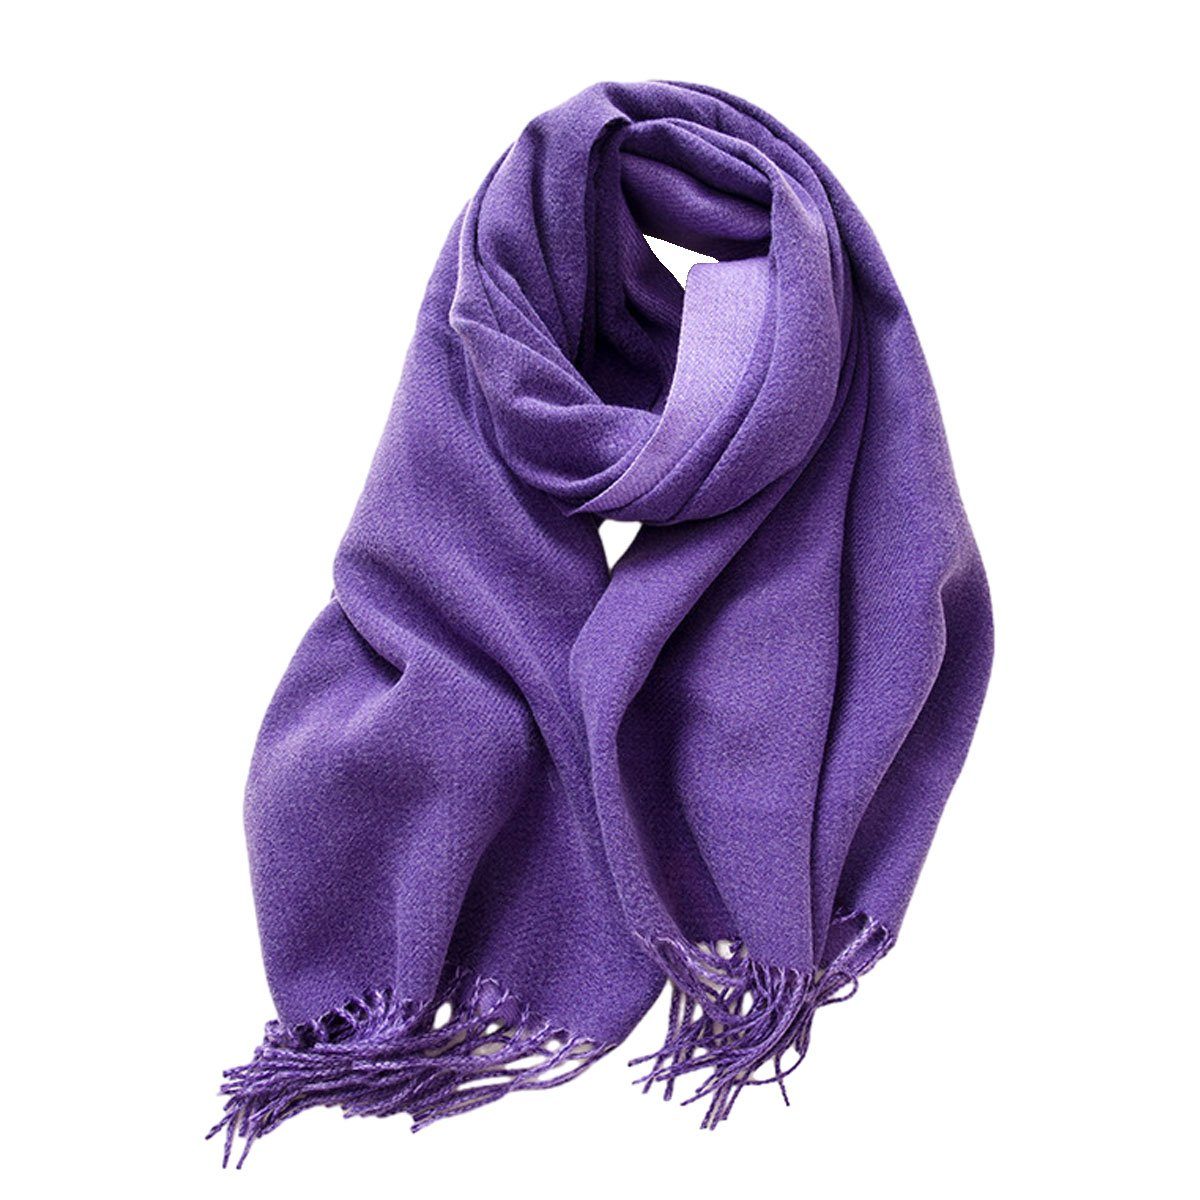 Jormftte Modeschal Damen Schal Stola Für abendkleid Winter Schals für Frauen Warme Schal Violett | Modeschals